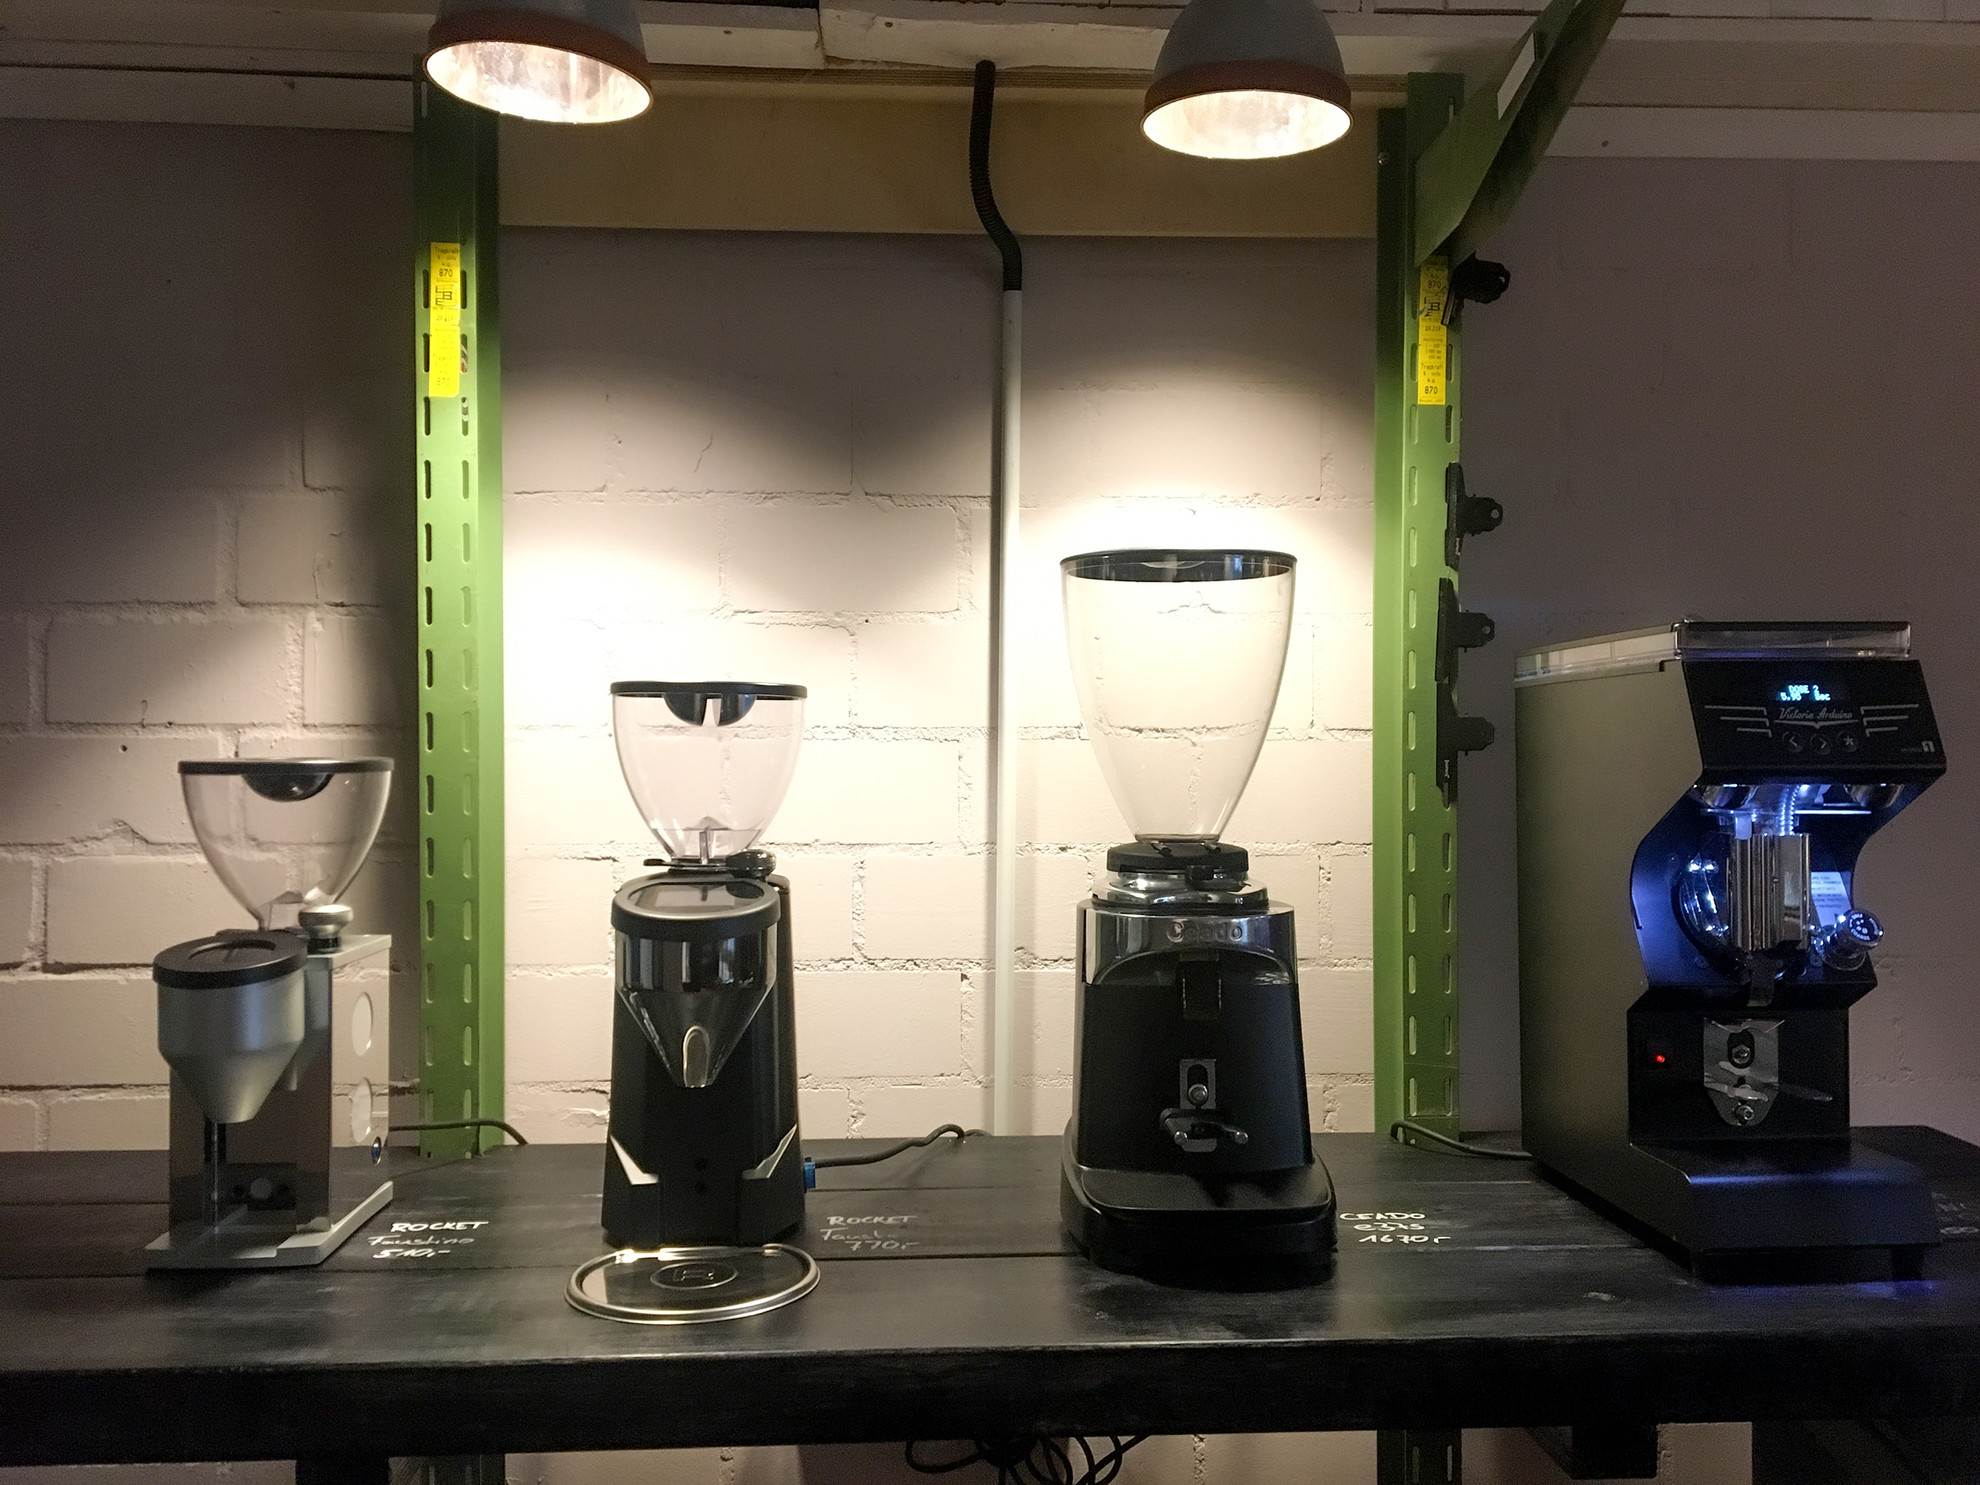 Verkauf neuer Maschinen rund um den Kaffee